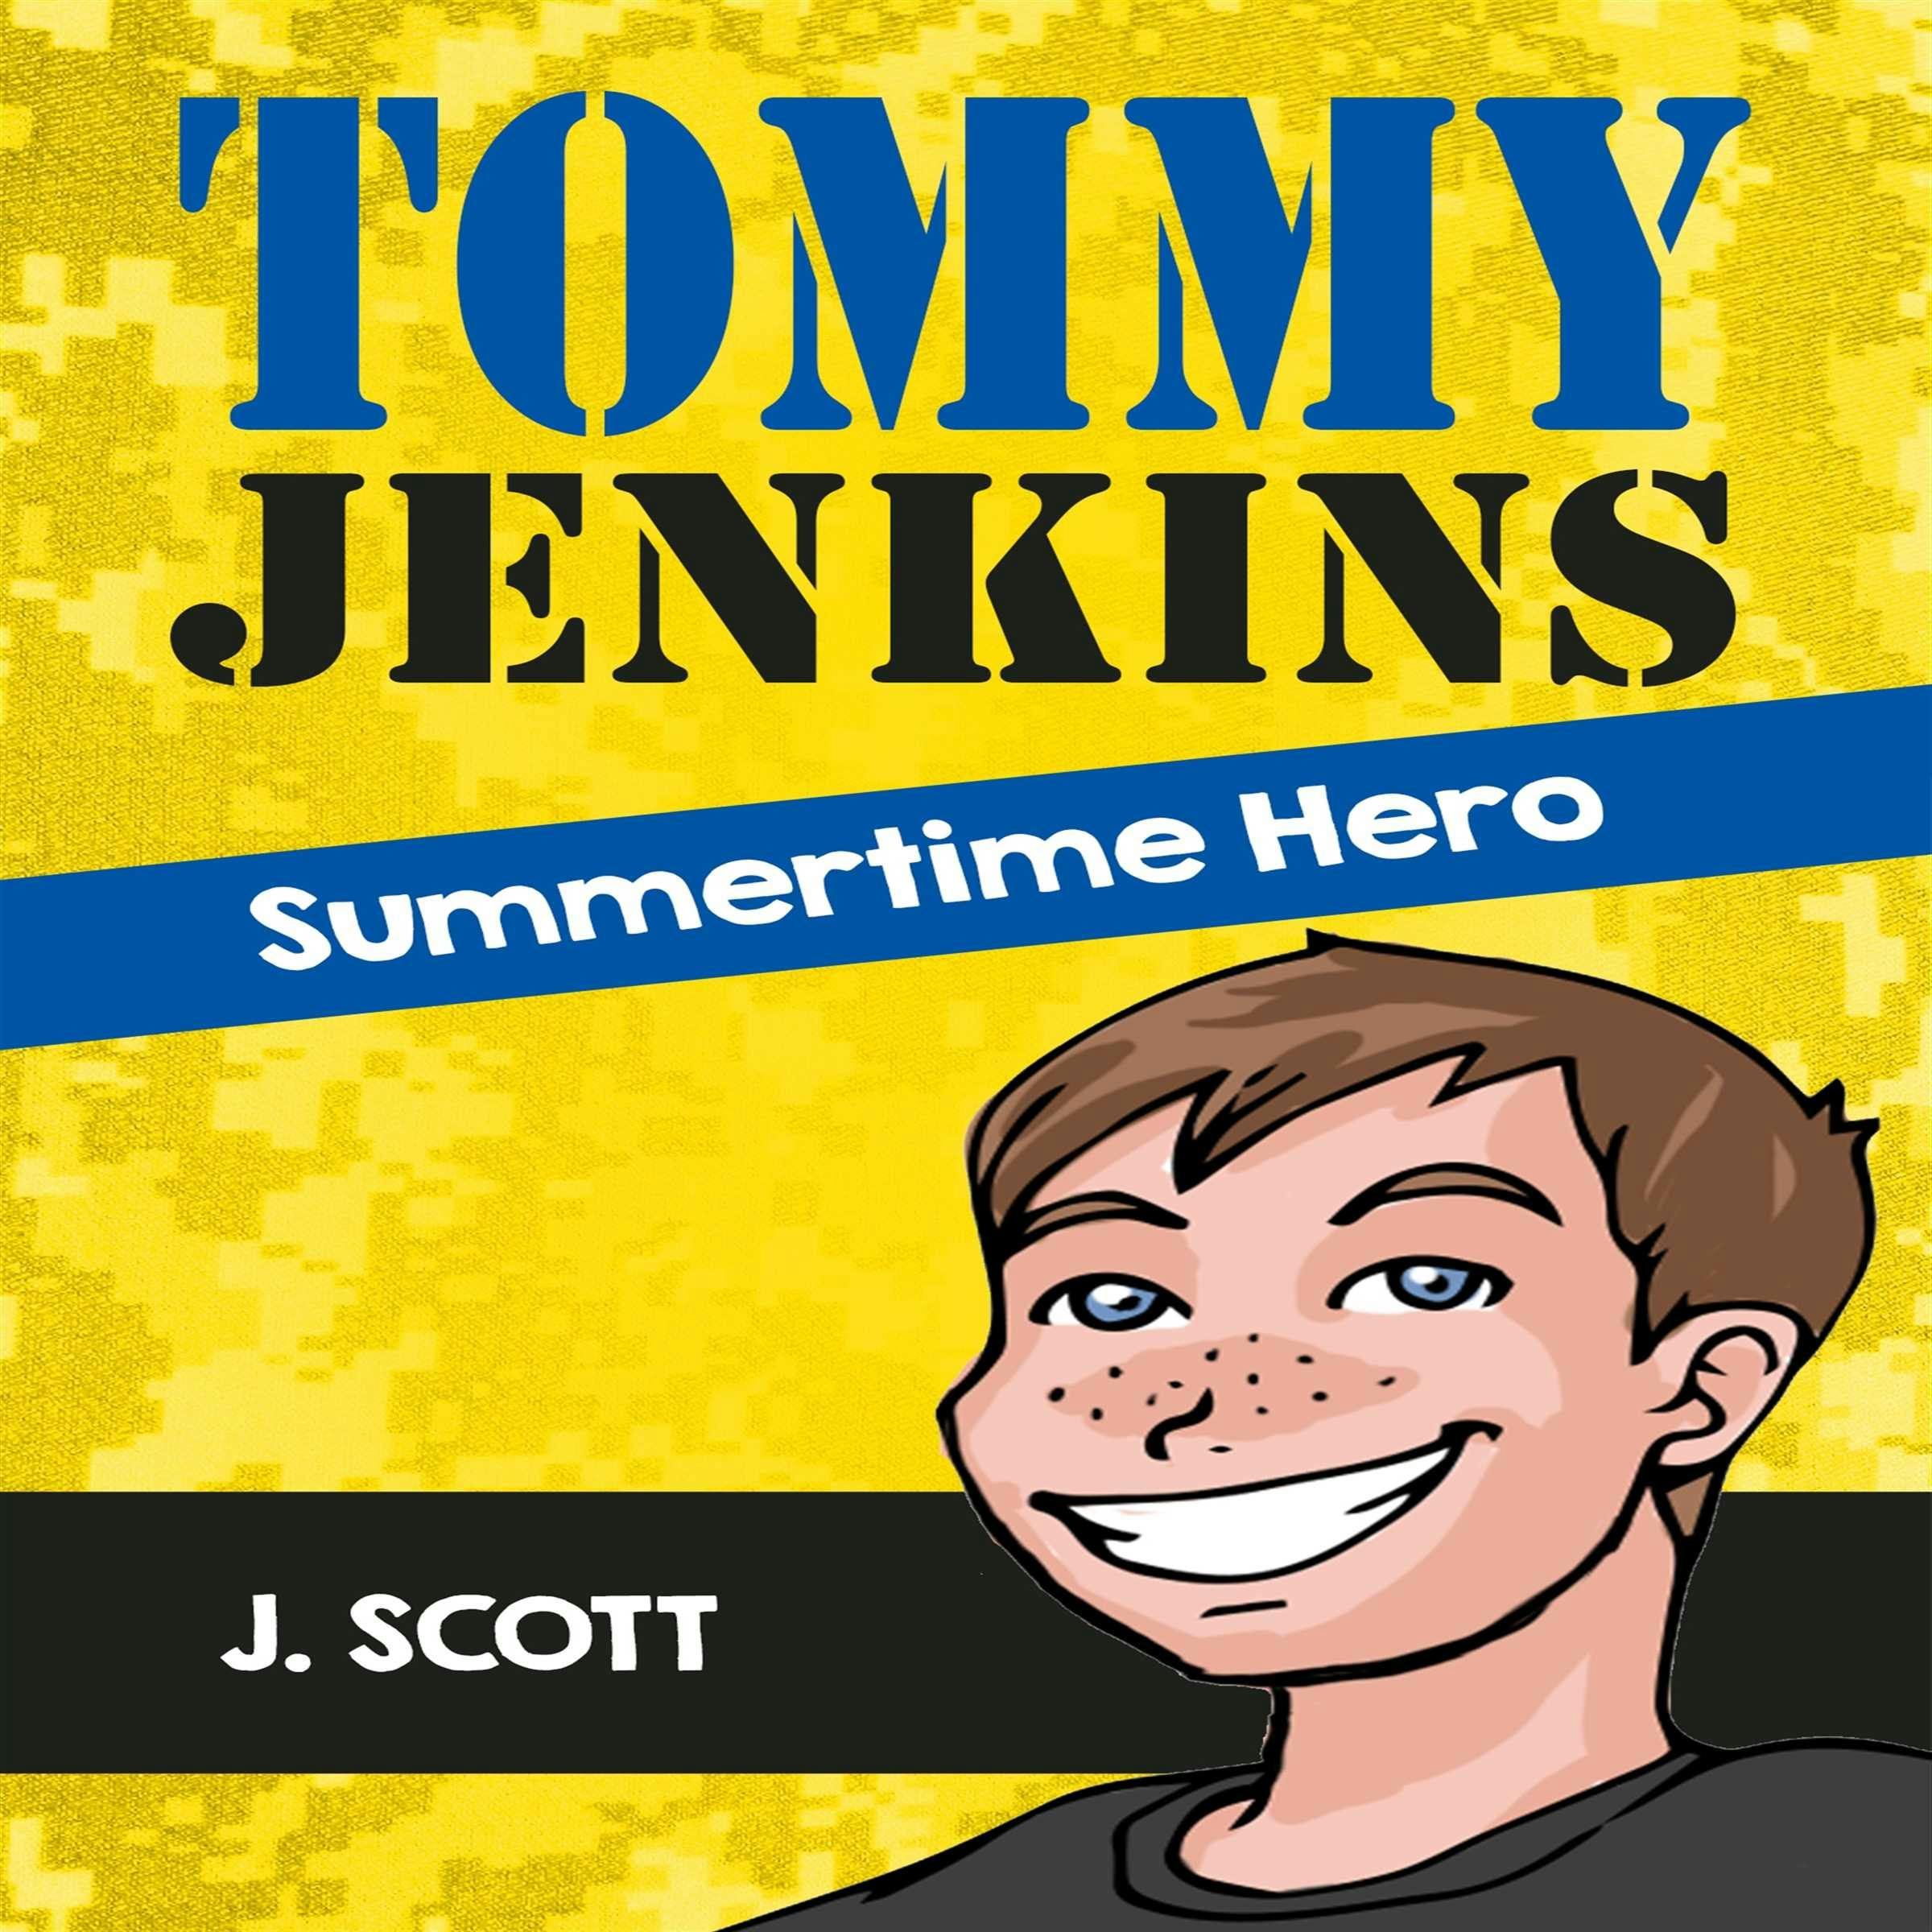 Tommy Jenkins Summertime Hero - J. Scott